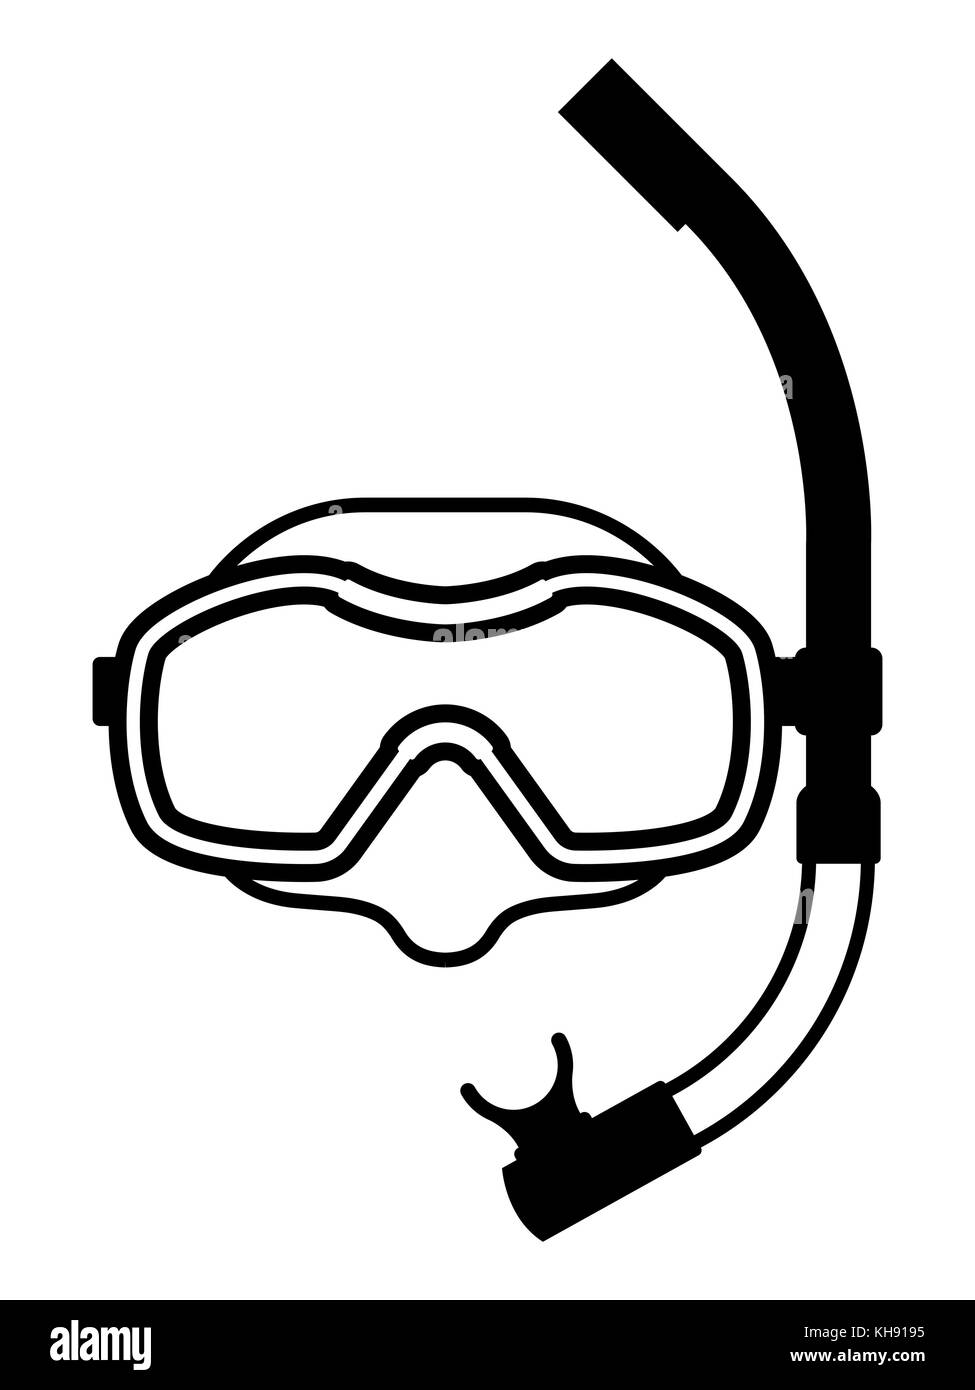 Icono de vectores en blanco y negro del equipo de buceo de buceo máscara  para una visibilidad clara y snorkel para respirar bajo el agua, aislado en  blanco Imagen Vector de stock -